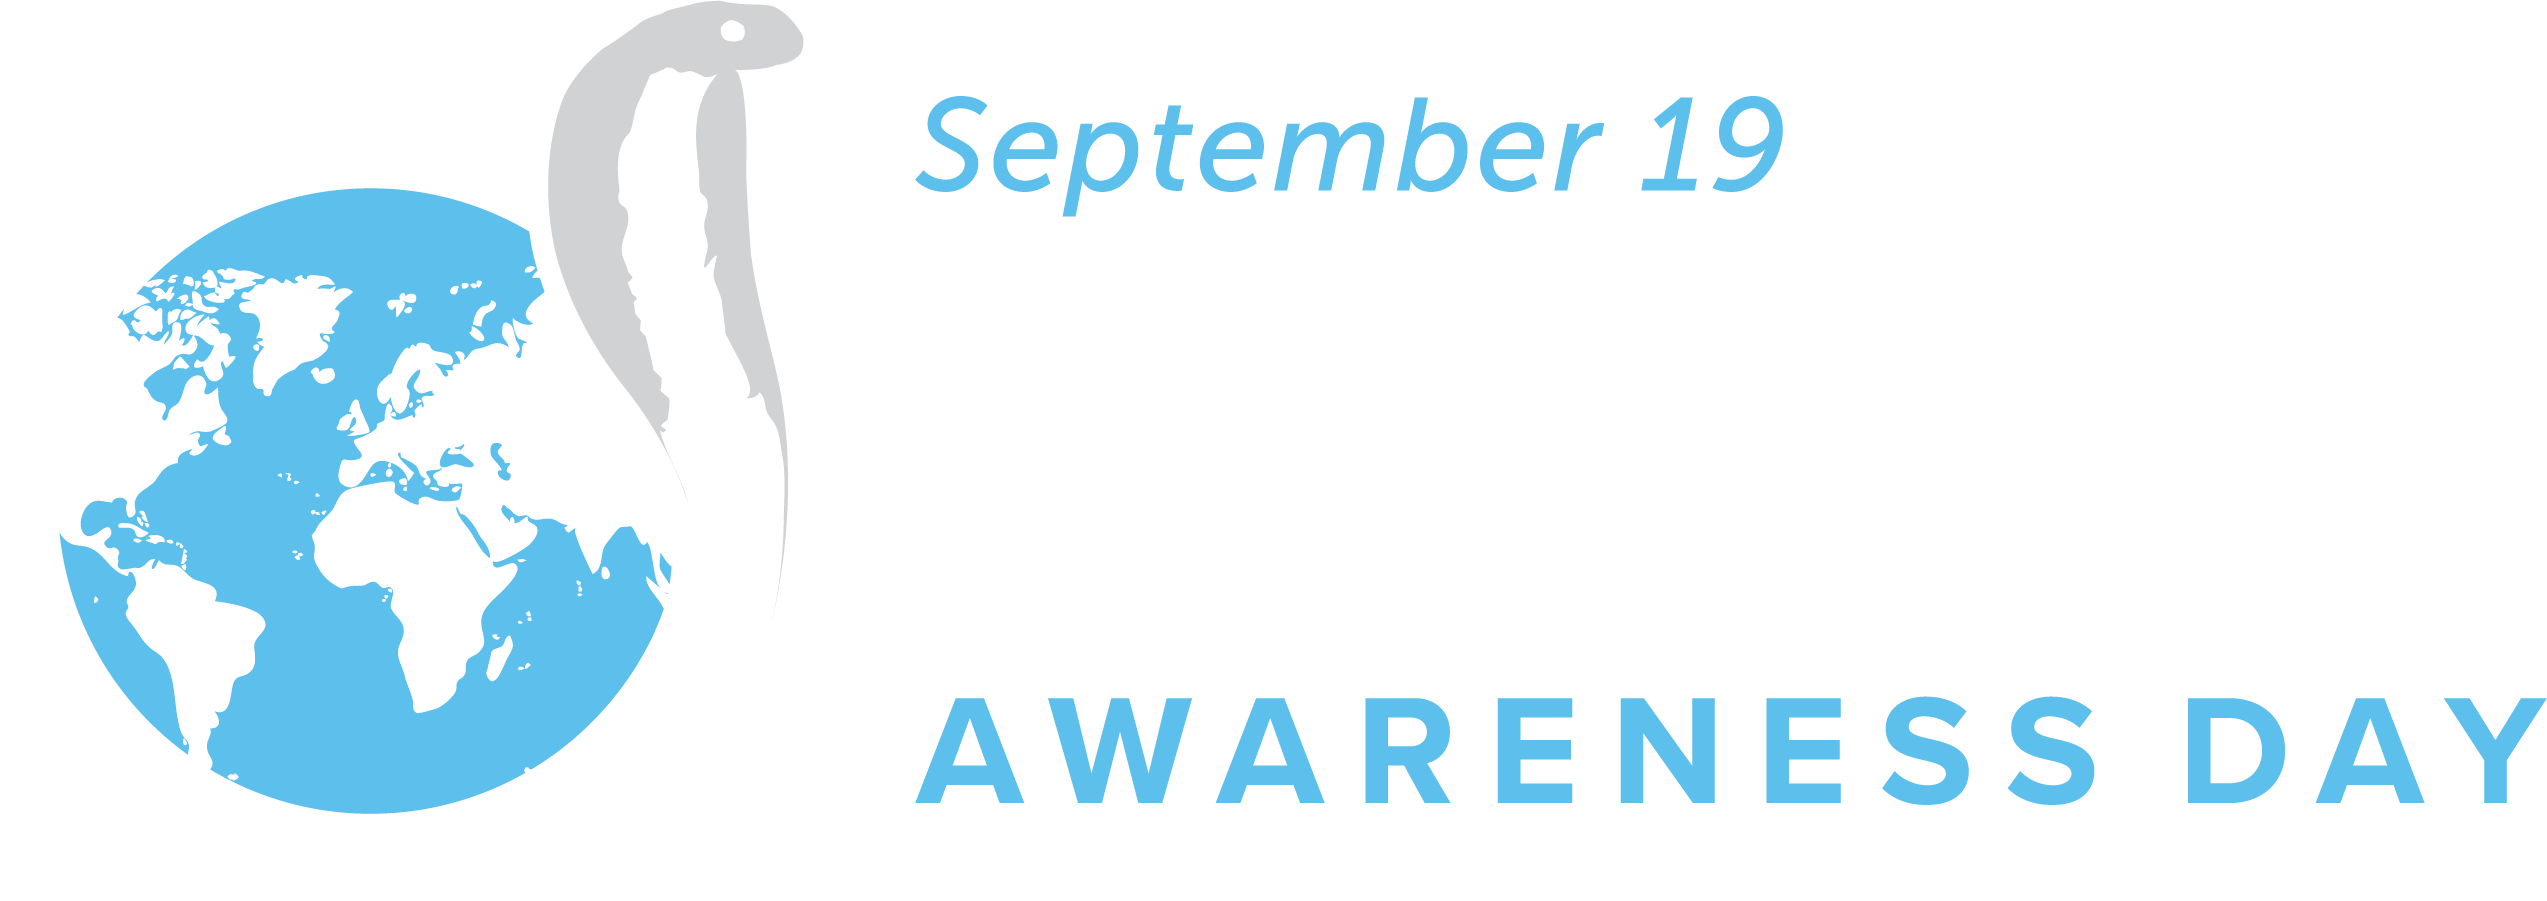 International Snakebite Awareness Day Logo